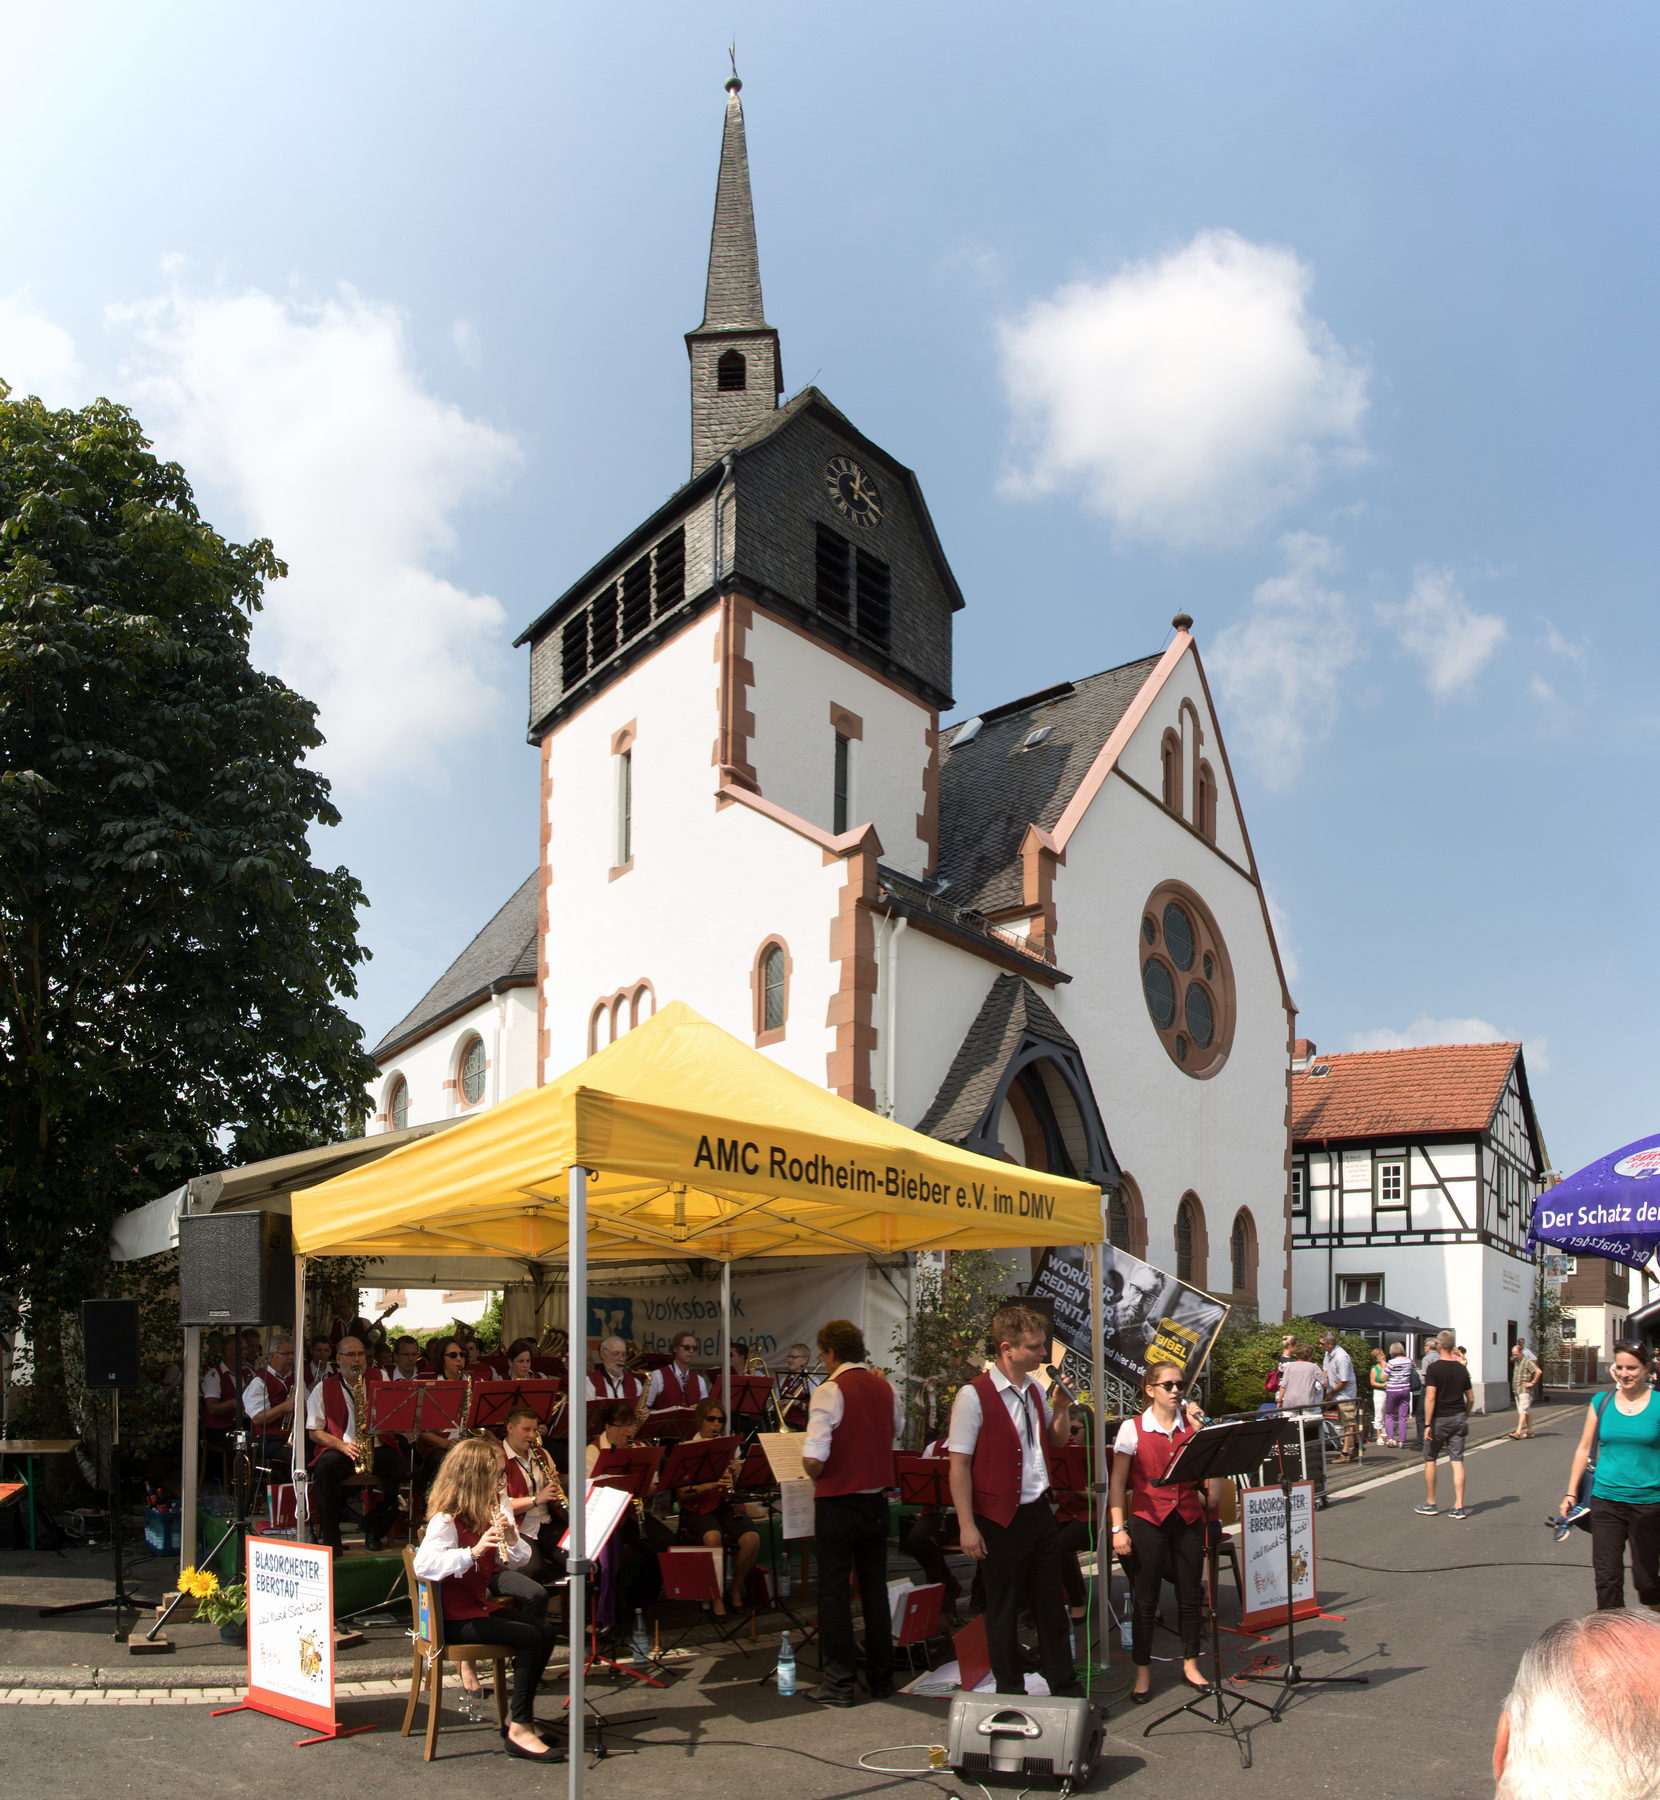 2017-08-27 - Brunnenfest Pa 03.jpg